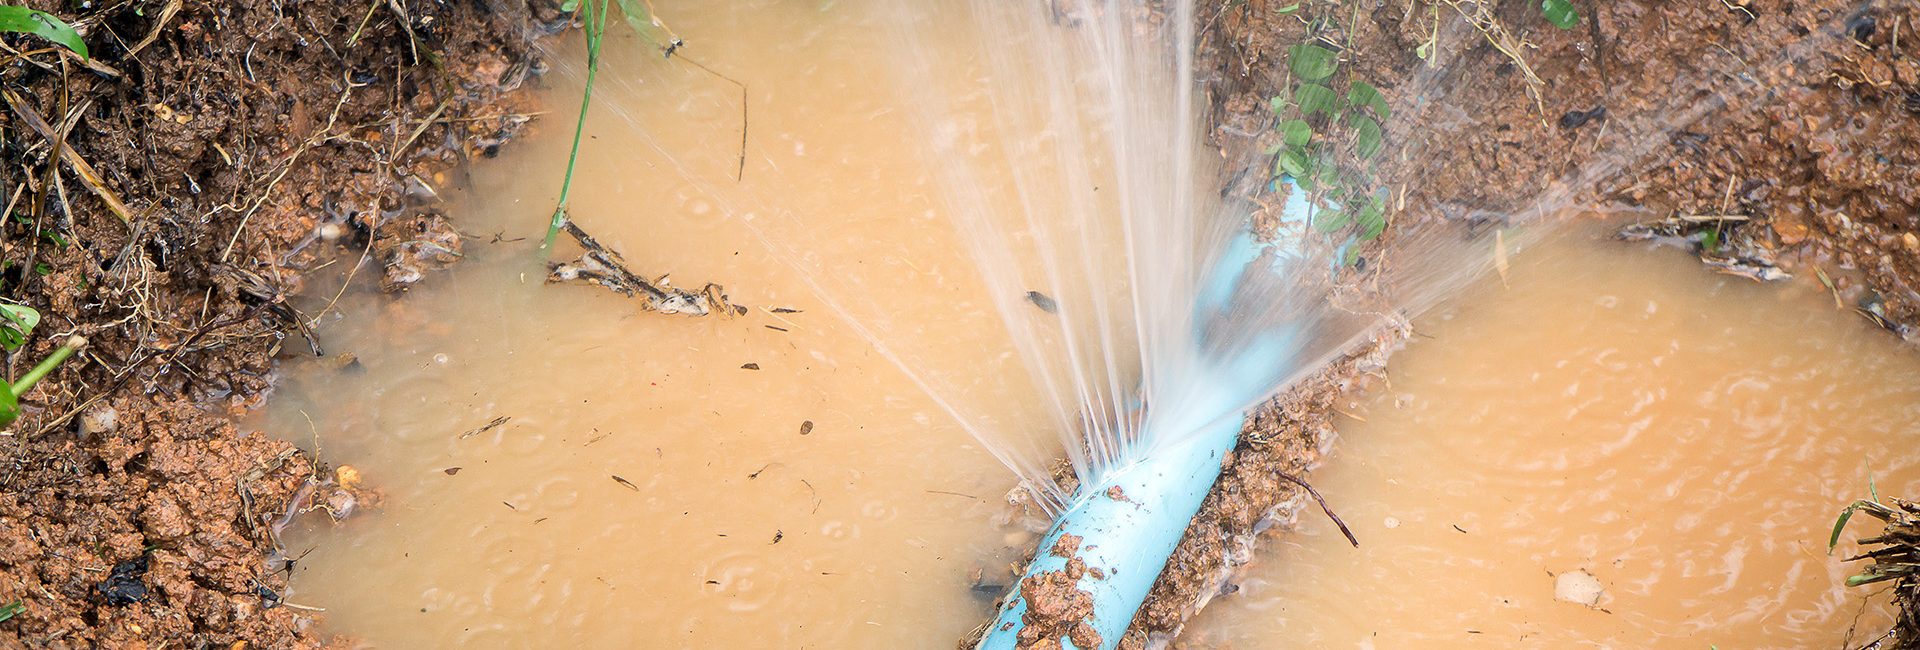 Under-ground-water-leak-bluebot-smart-water-meter